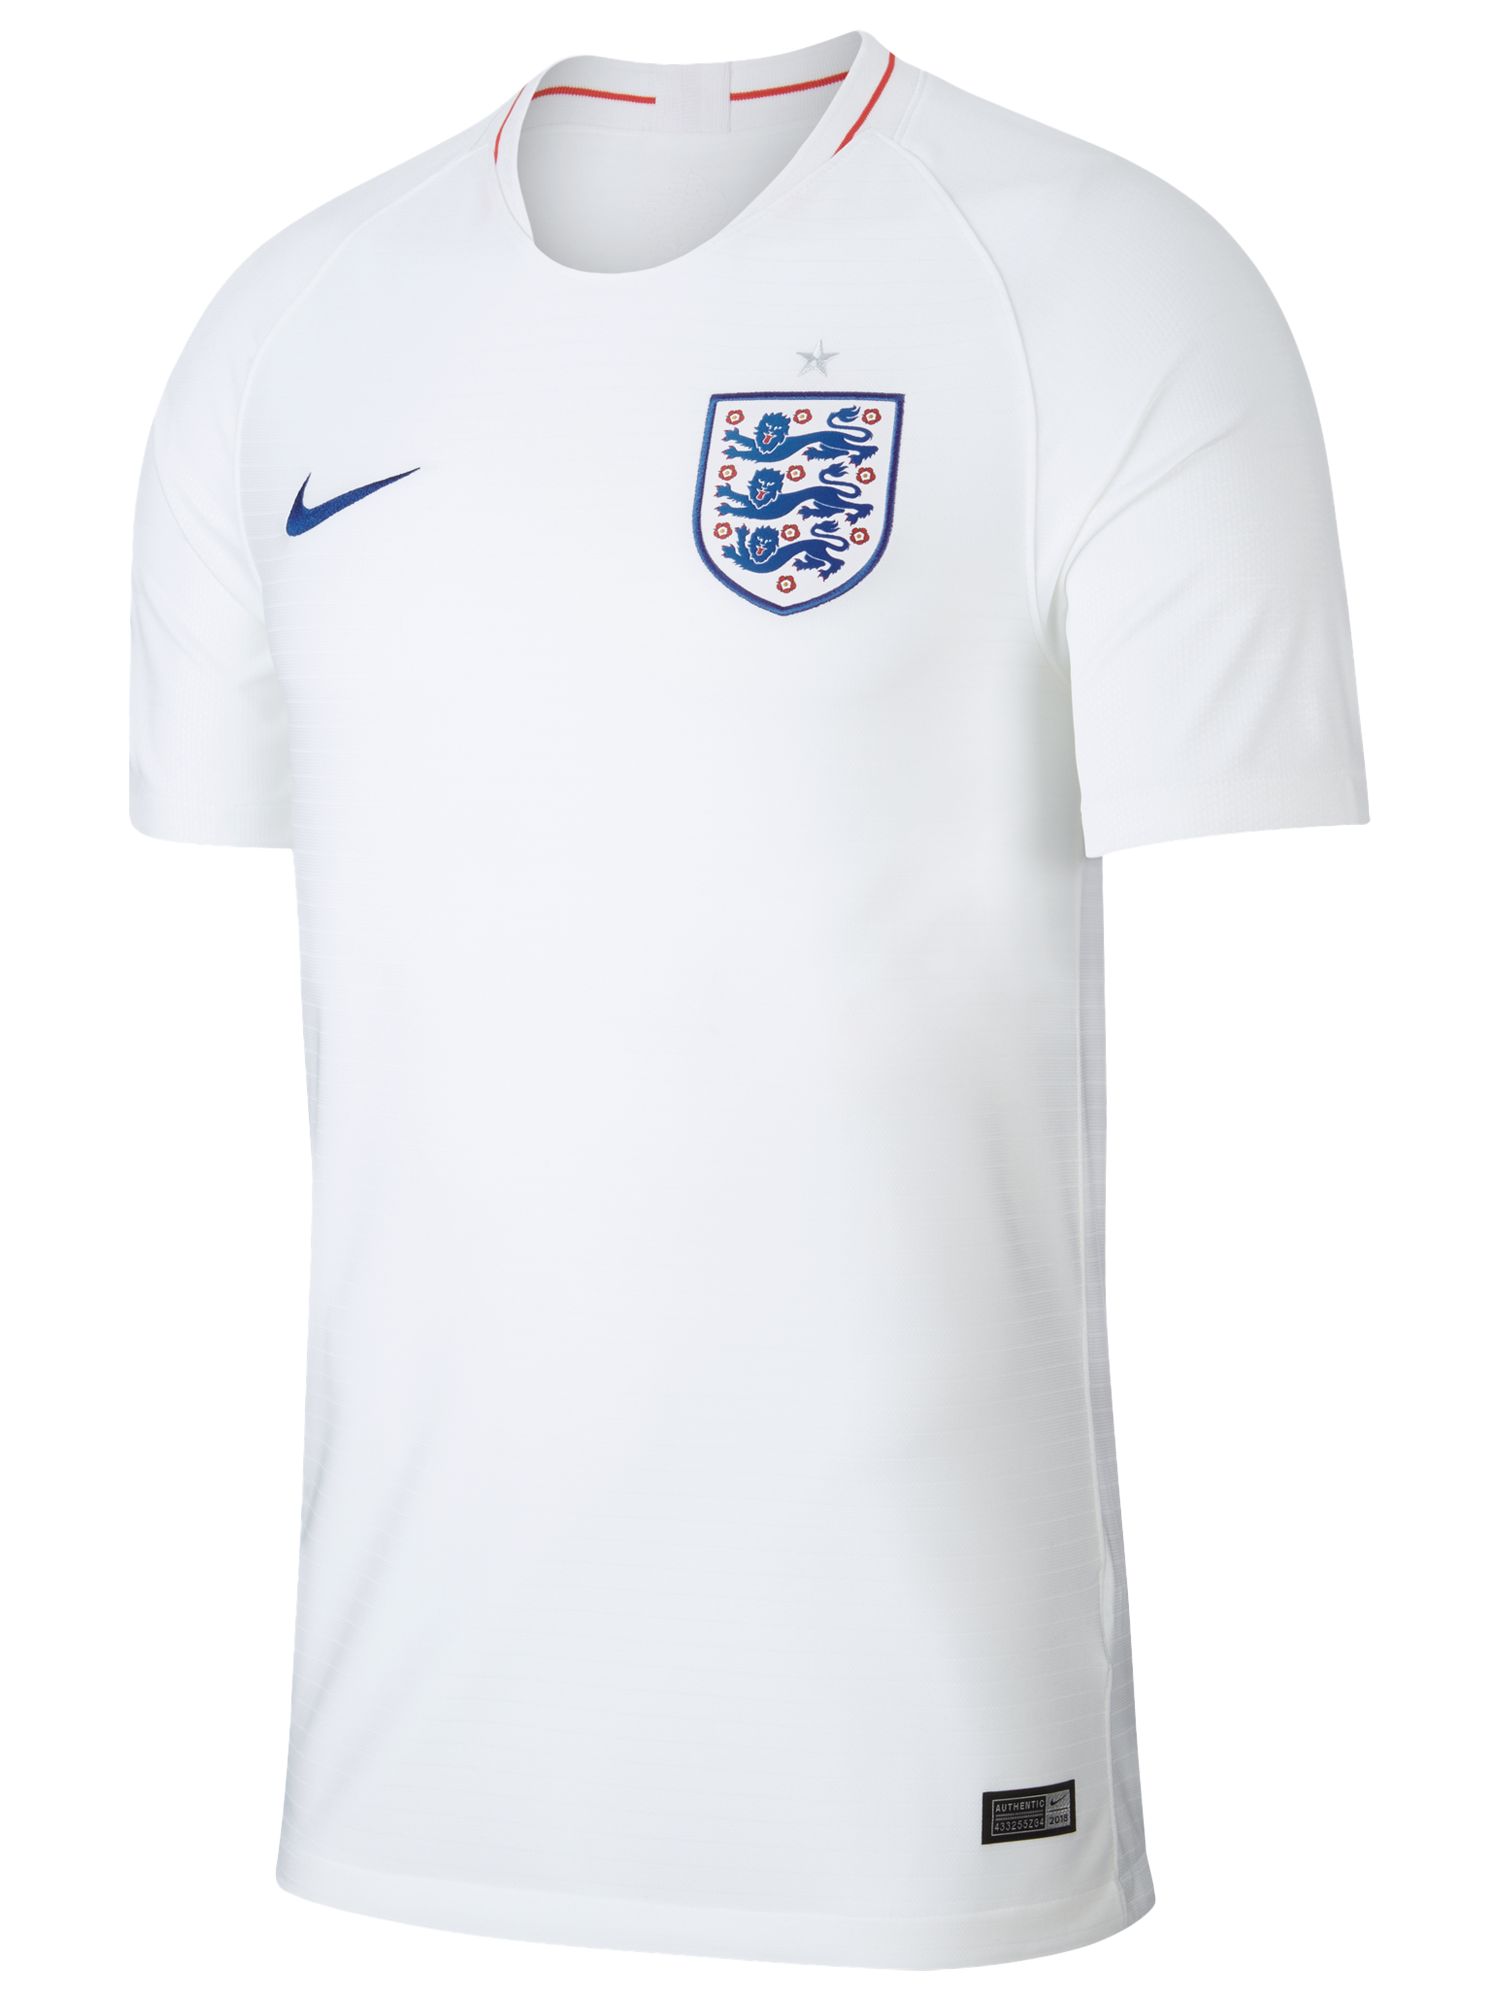 Nike 2018 England Stadium Kit Men's Football Shirt, White at John Lewis